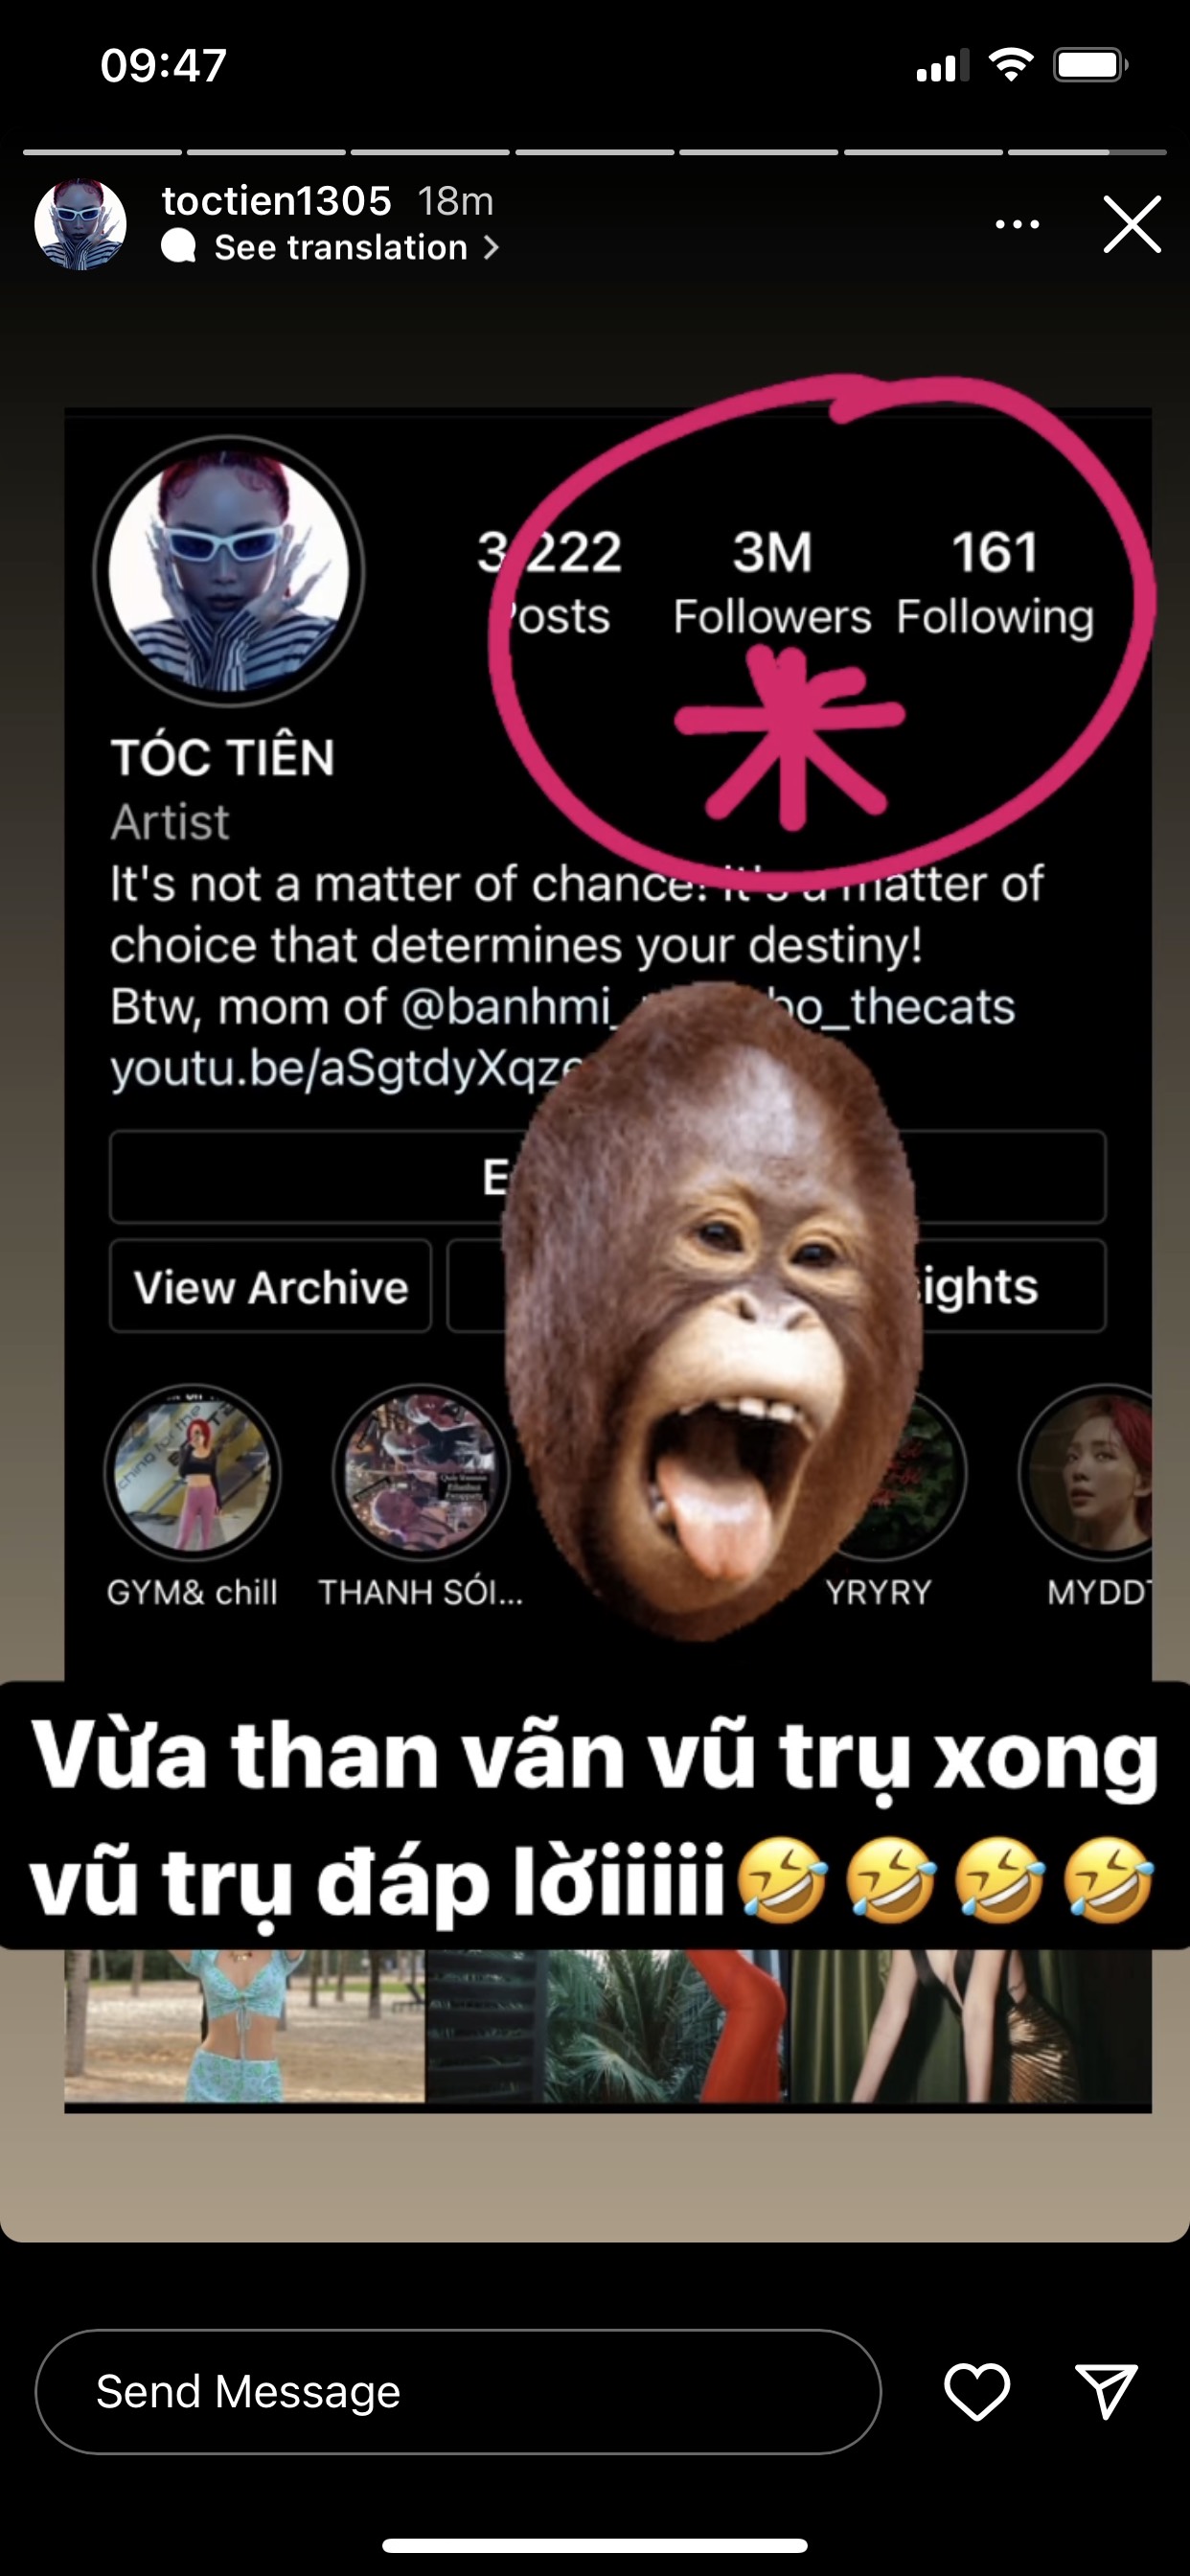 Tóc Tiên vui mừng thông báo trang Instagram cá nhân của cô nàng đã chạm mốc 3 triệu lượt theo dõi trên nền tảng MXH này.